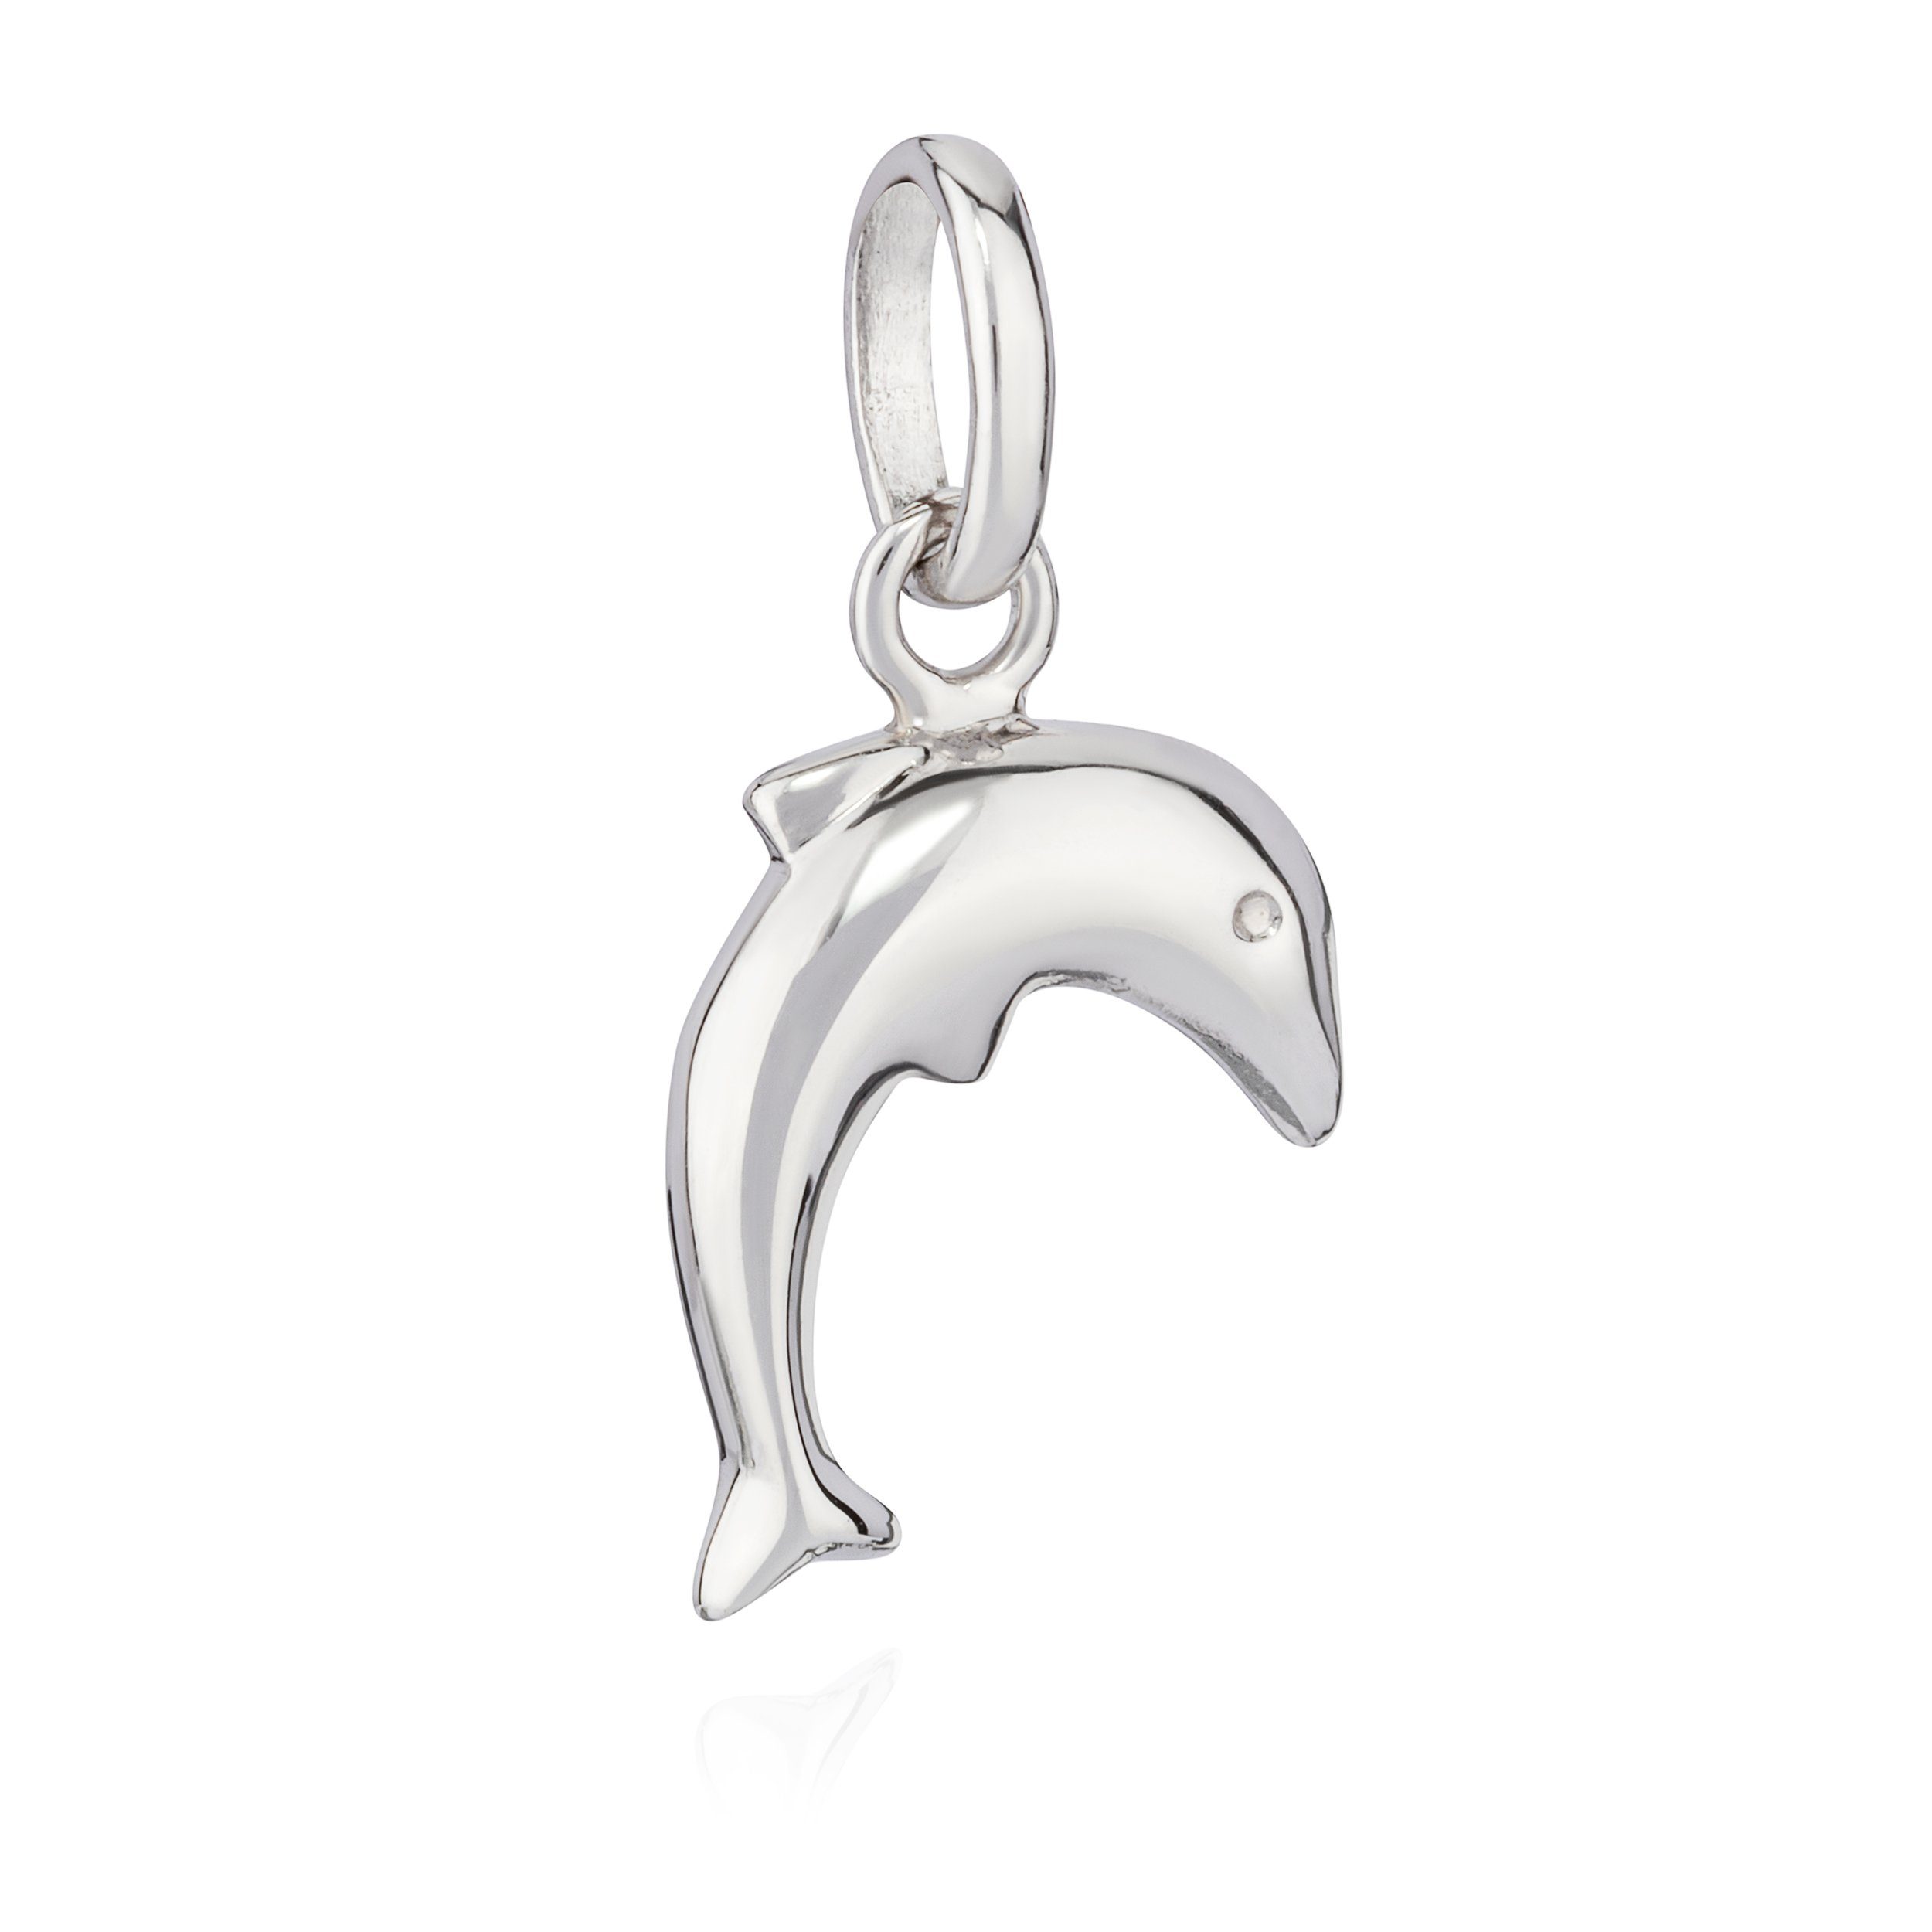 NKlaus Kettenanhänger Delfin Silber g anlaufgeschützt 925 Kettenanhänger